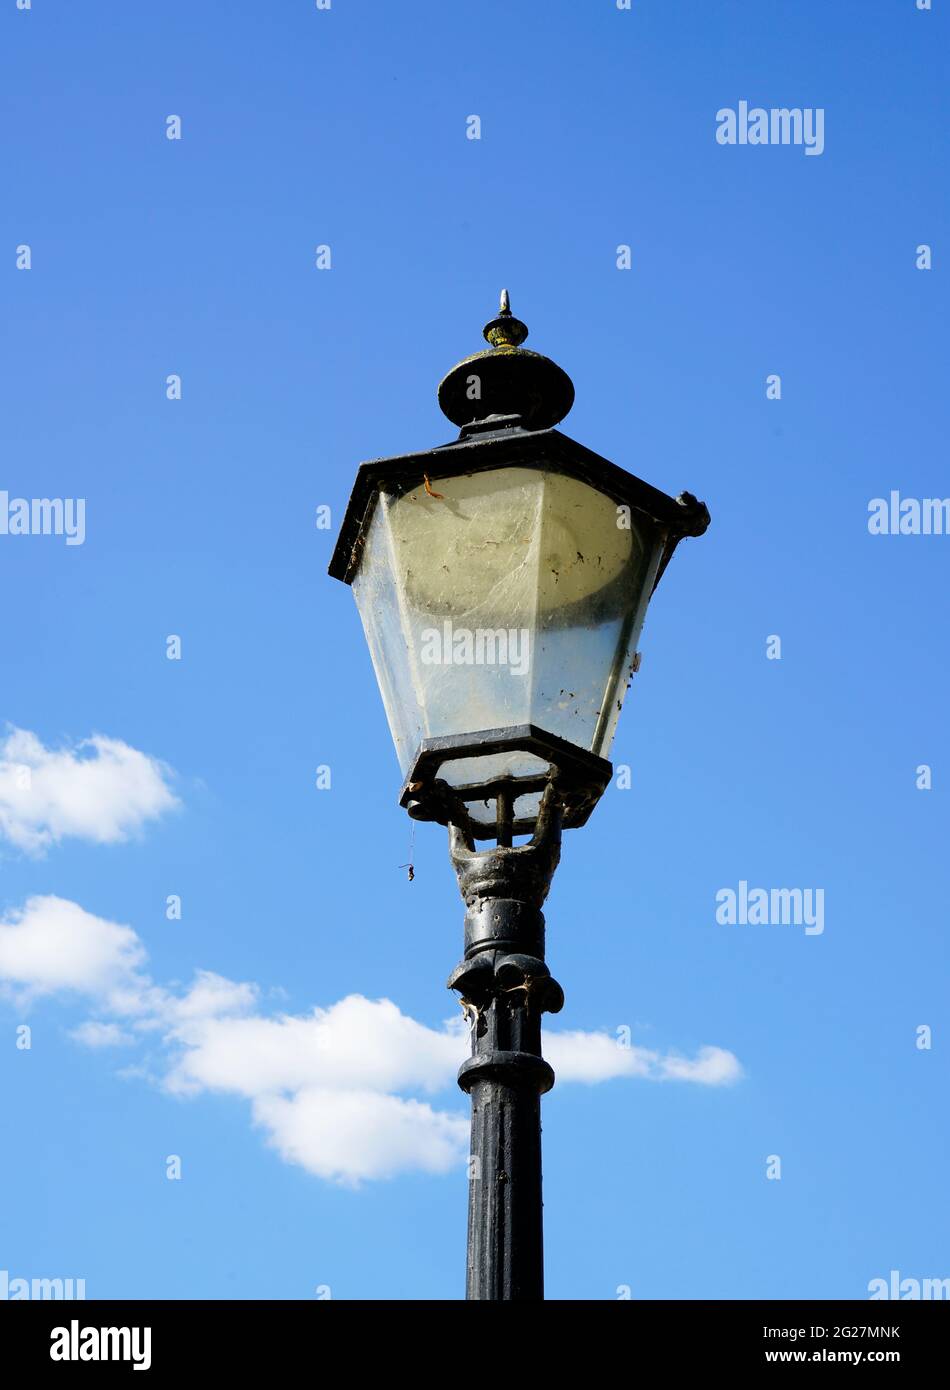 Lámpara de calle vieja de metal negro. Cielo azul con nubes en el fondo. Foto de stock